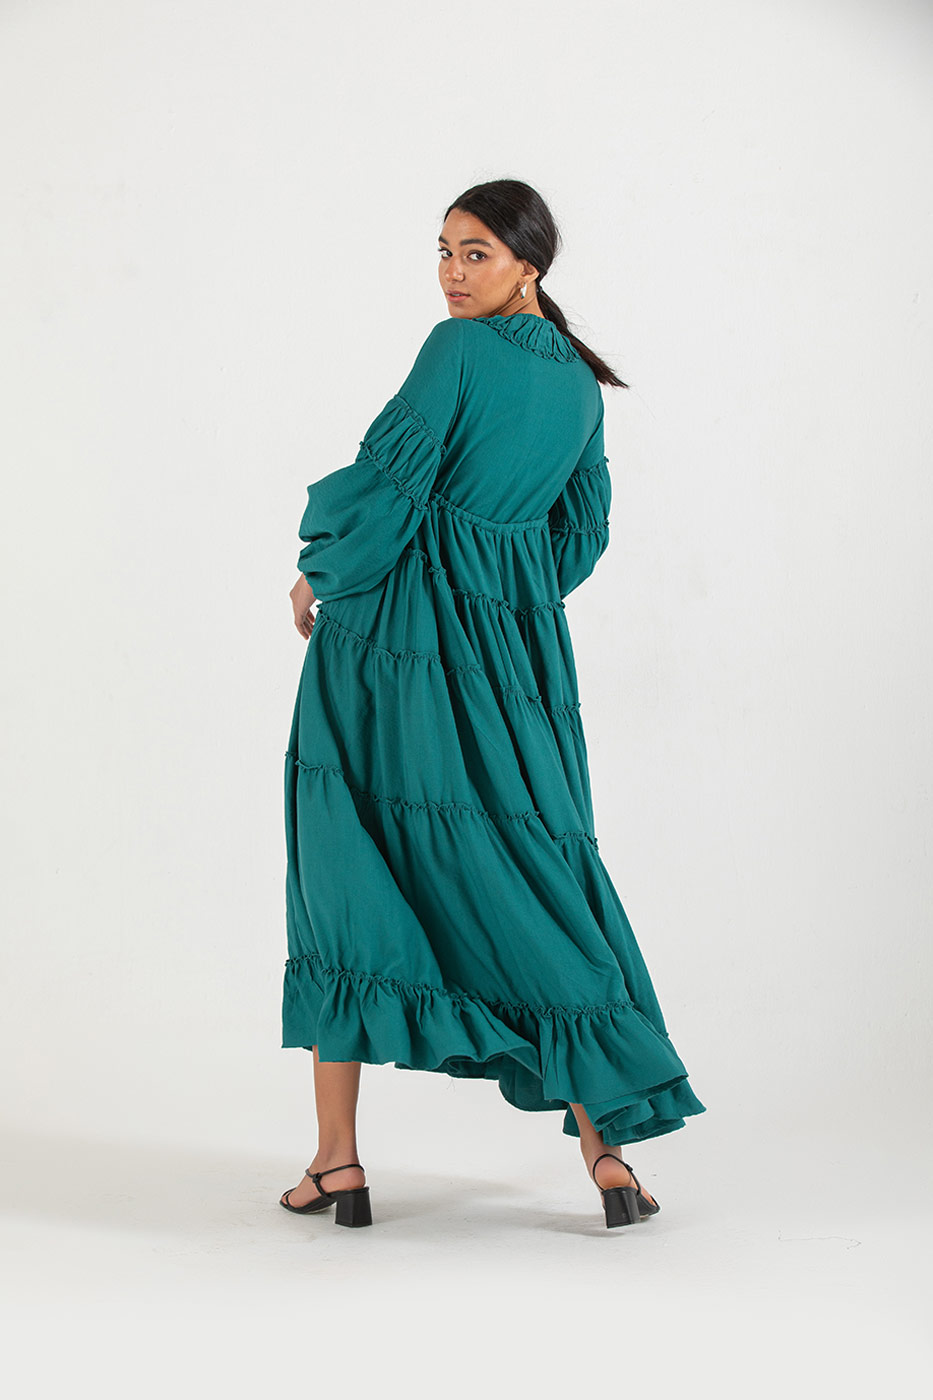 Summer Vibrant Dress In Teal Green - Dresscode, Egypt